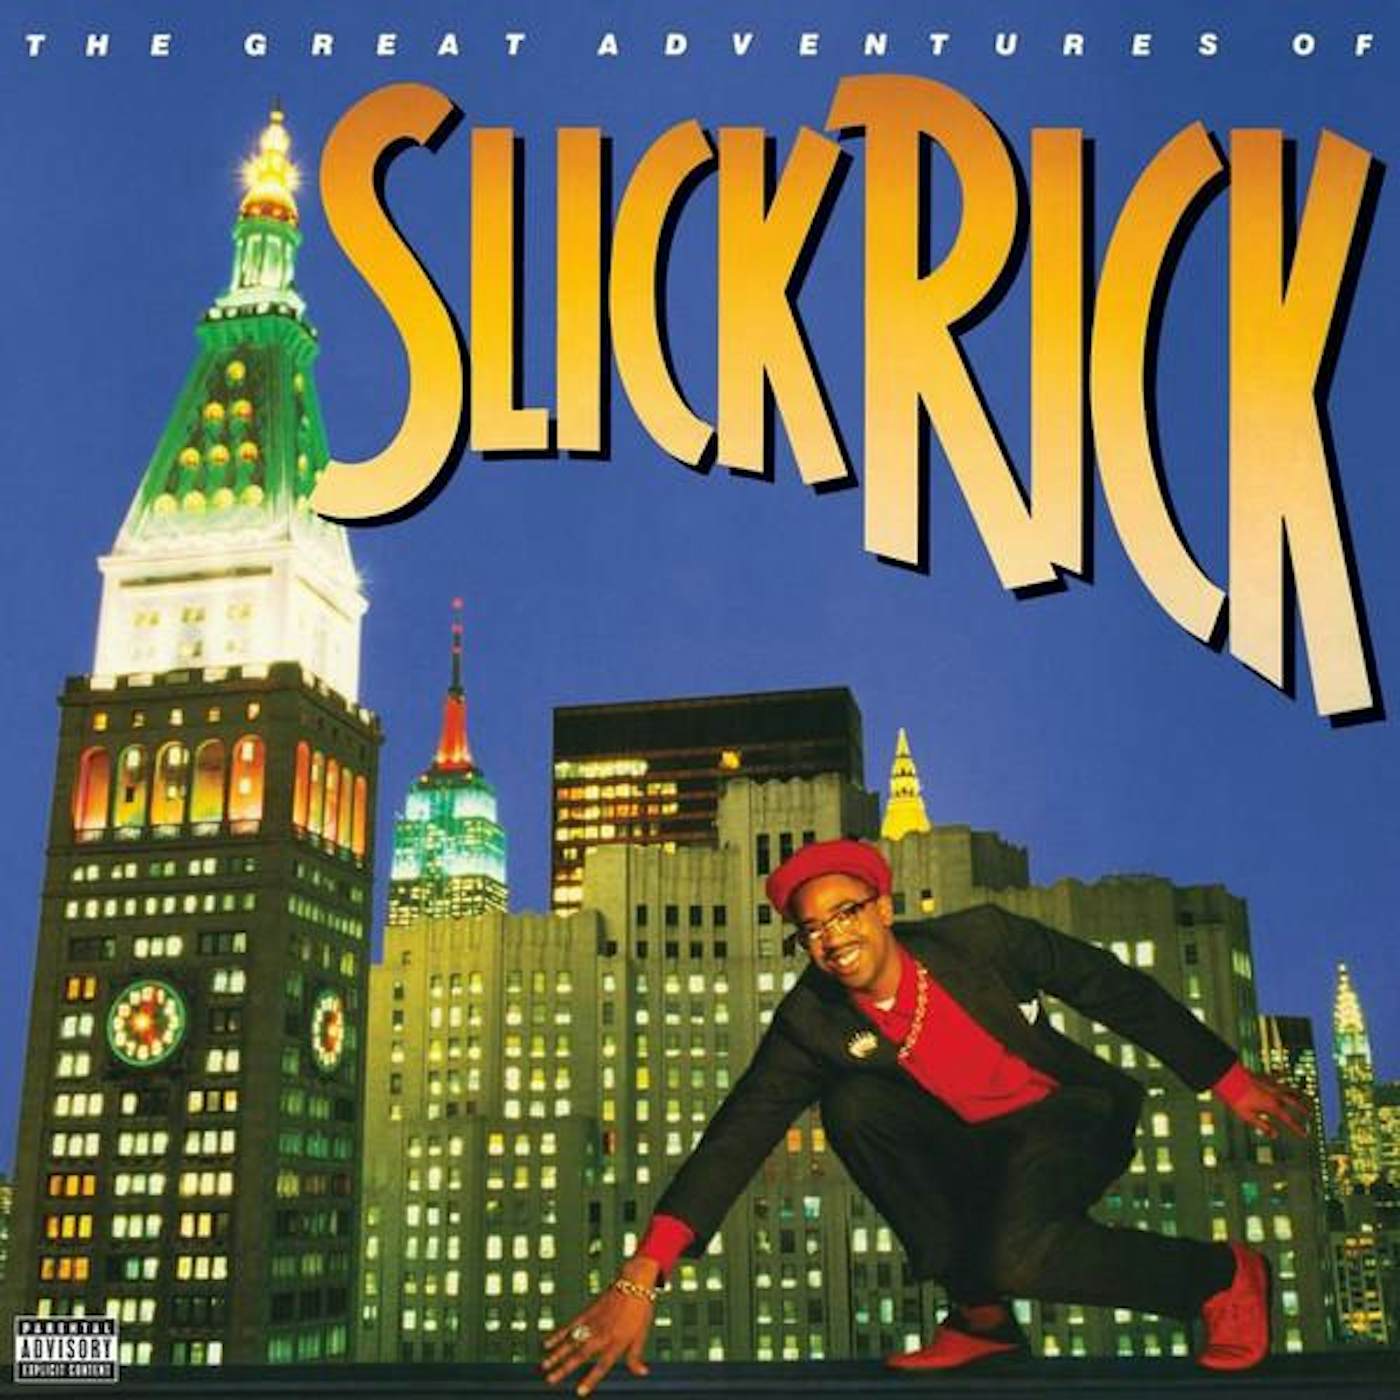 GREAT ADVENTURES OF SLICK RICK CD